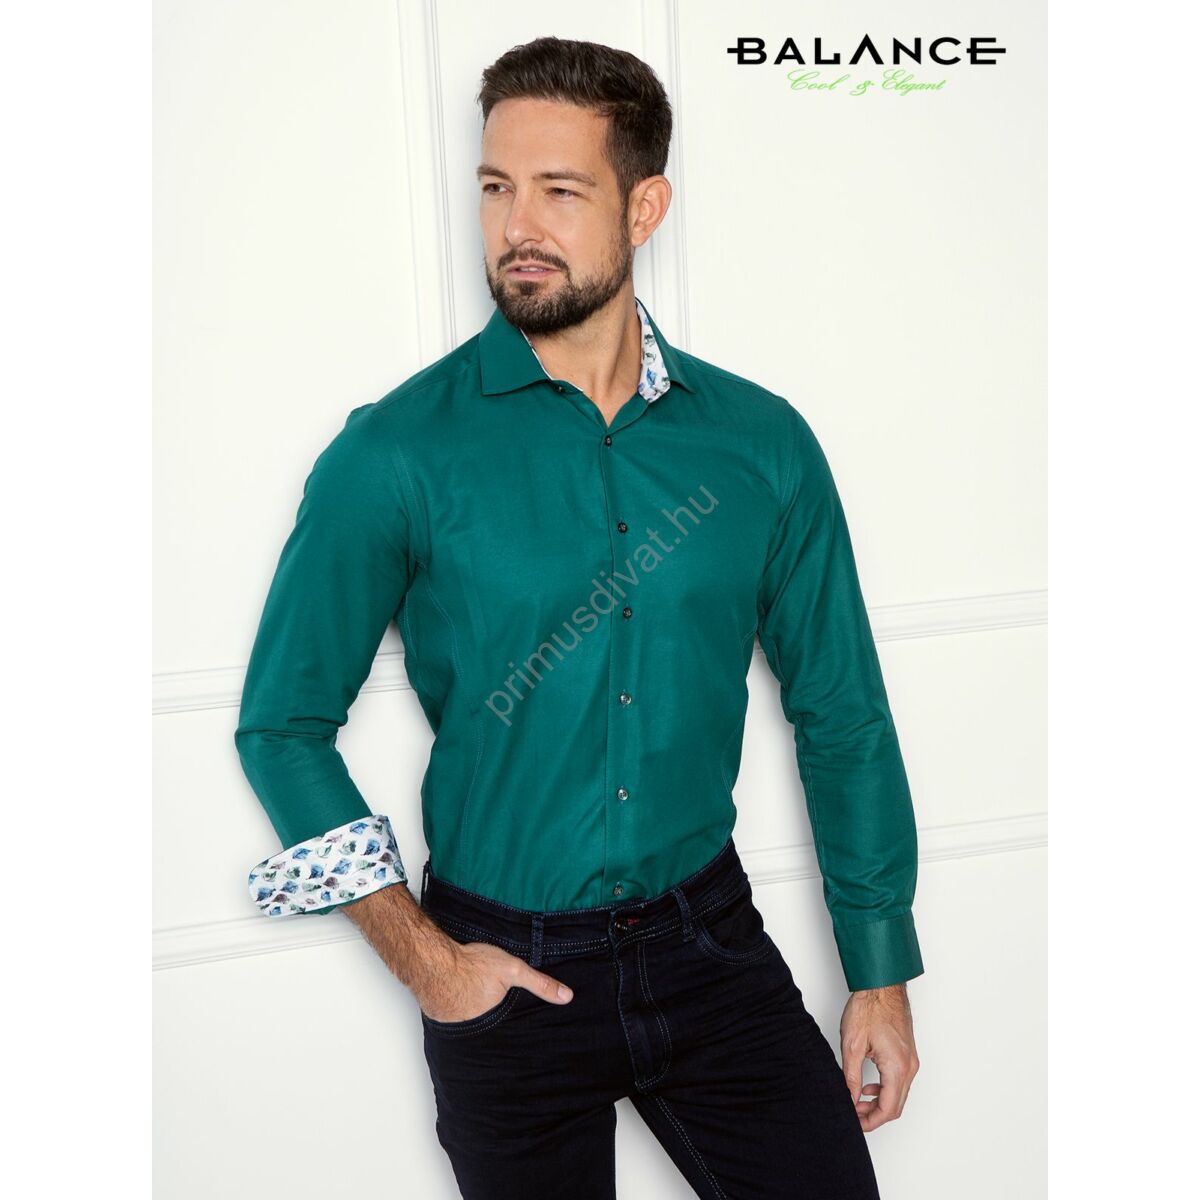 Balance zöld hosszú ujjú slim-fit pamutvászon Level ing, gallérja és mandzsettája belső felén színes levélmintás betétekkel